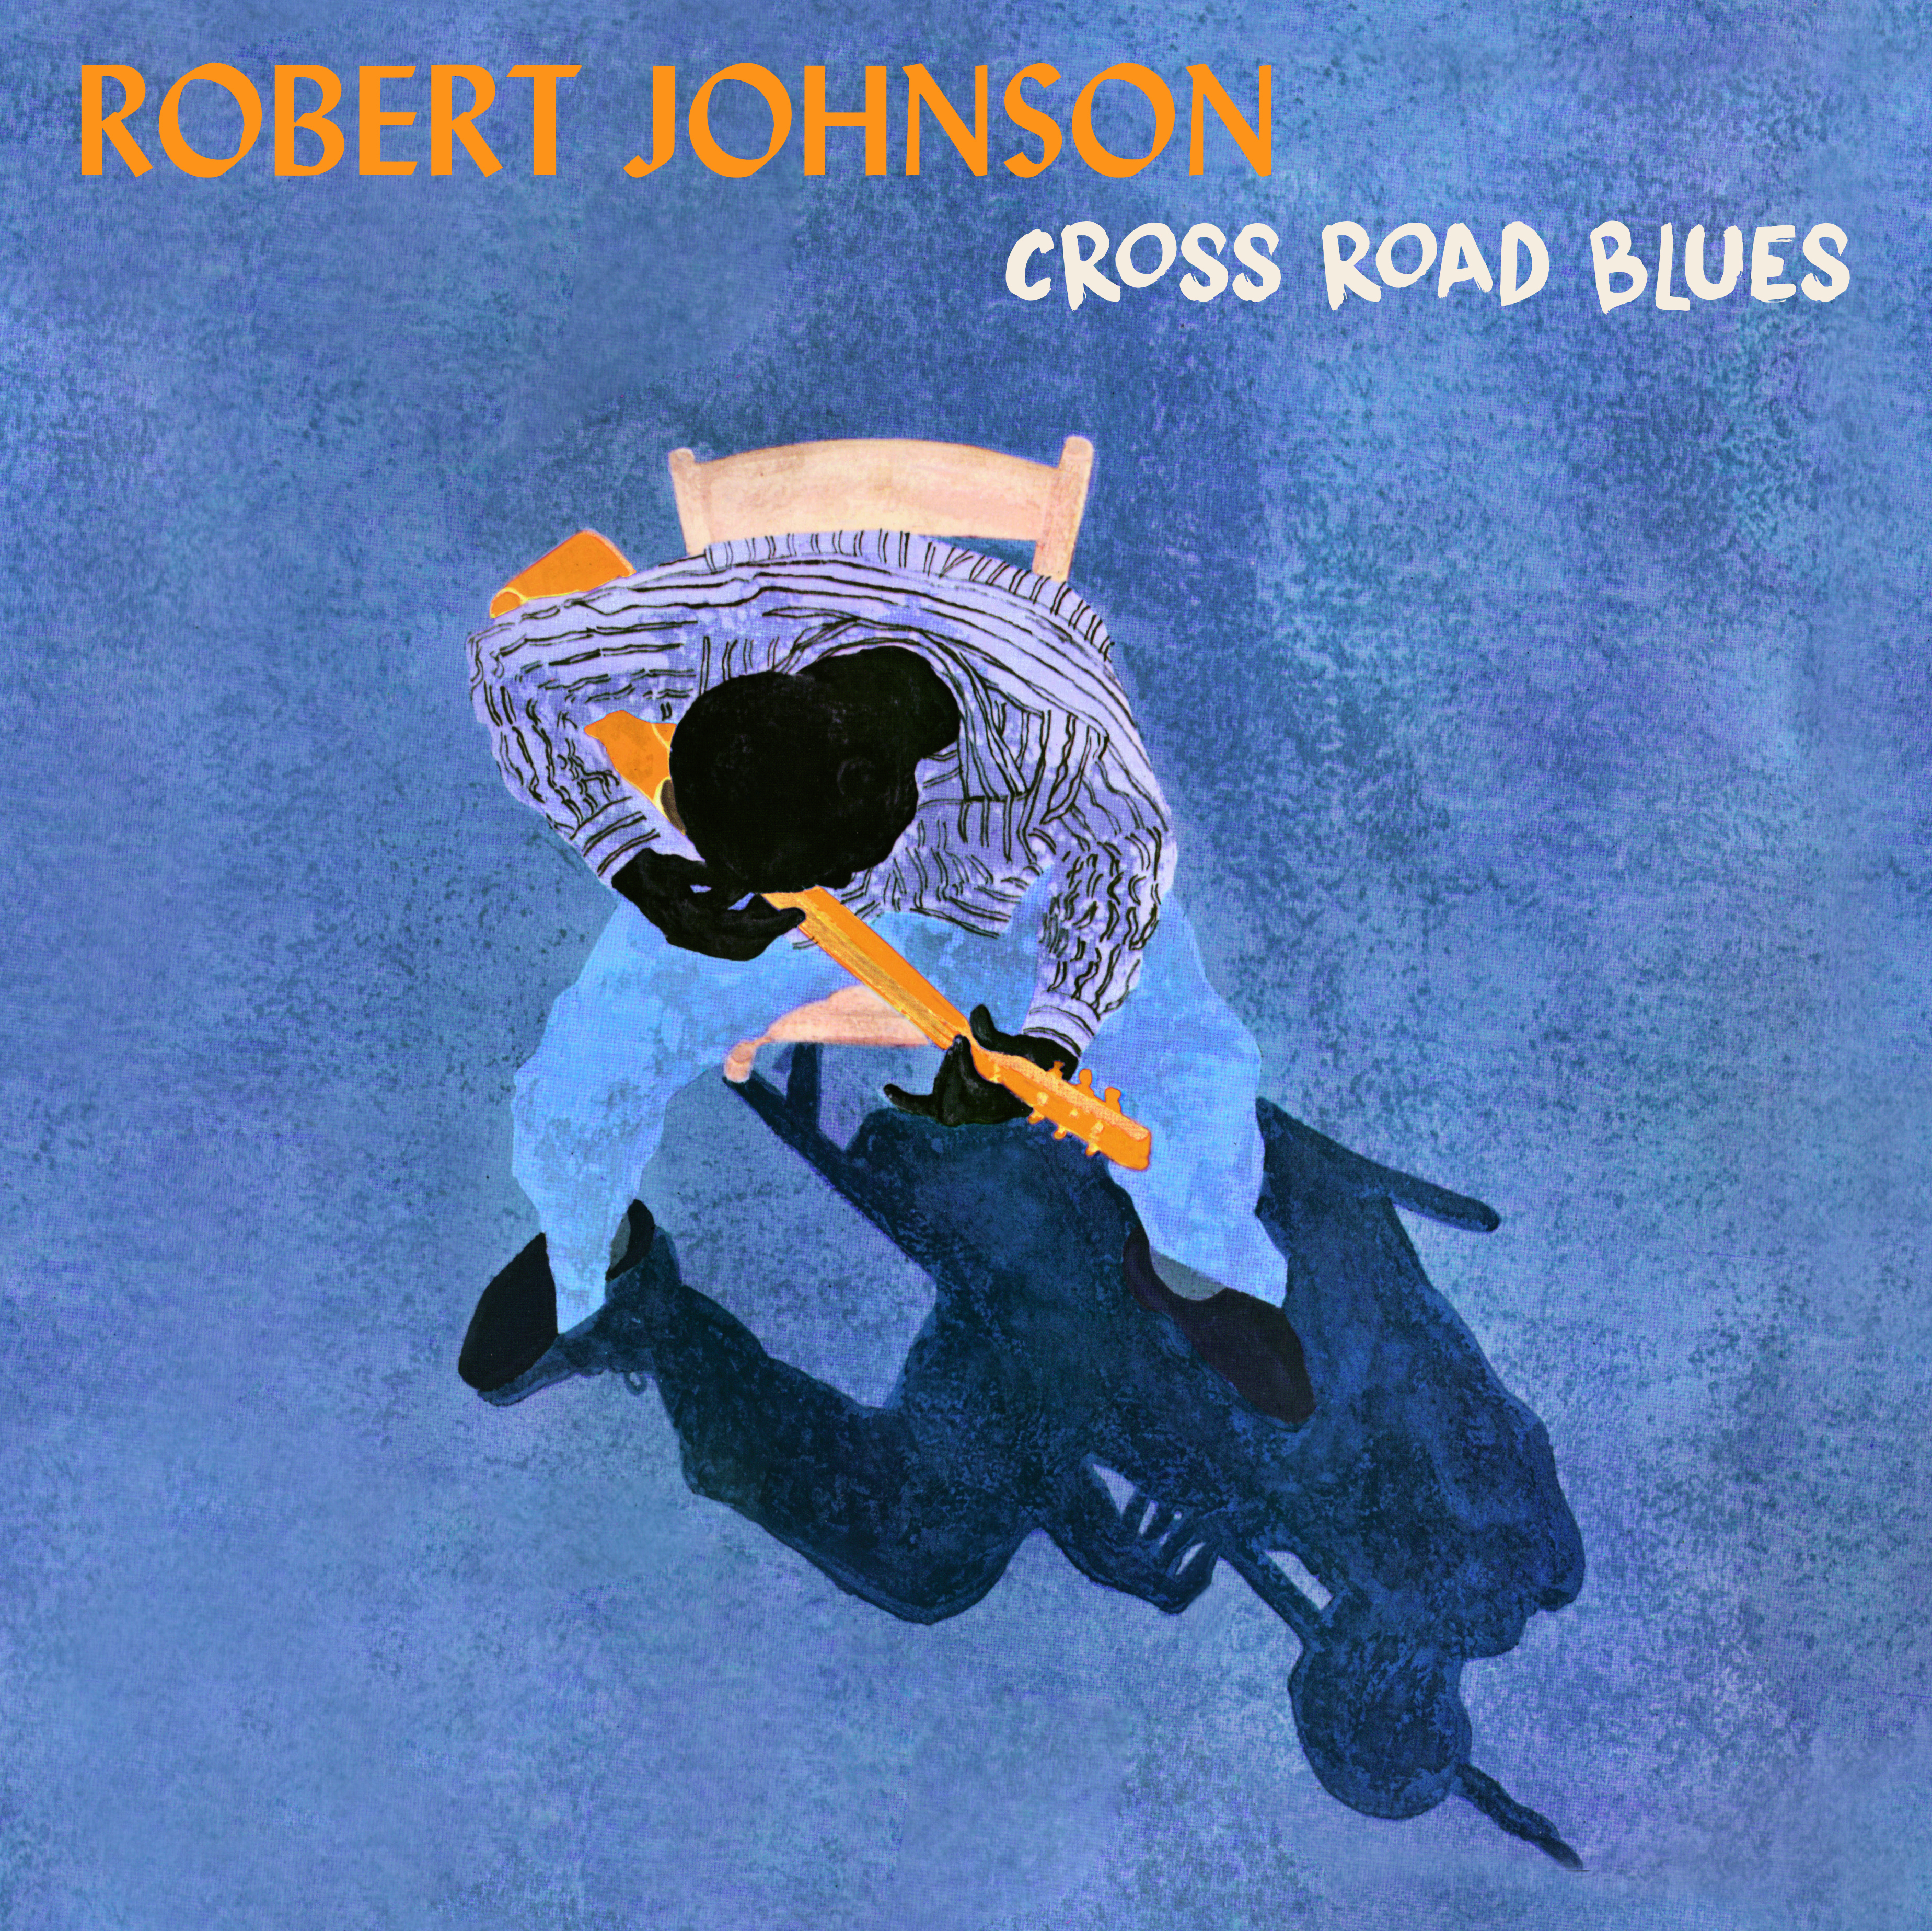 Robert Johnson Cross Road Blues (Vinyl) 12" Album (Gatefold Cover) - 第 1/1 張圖片